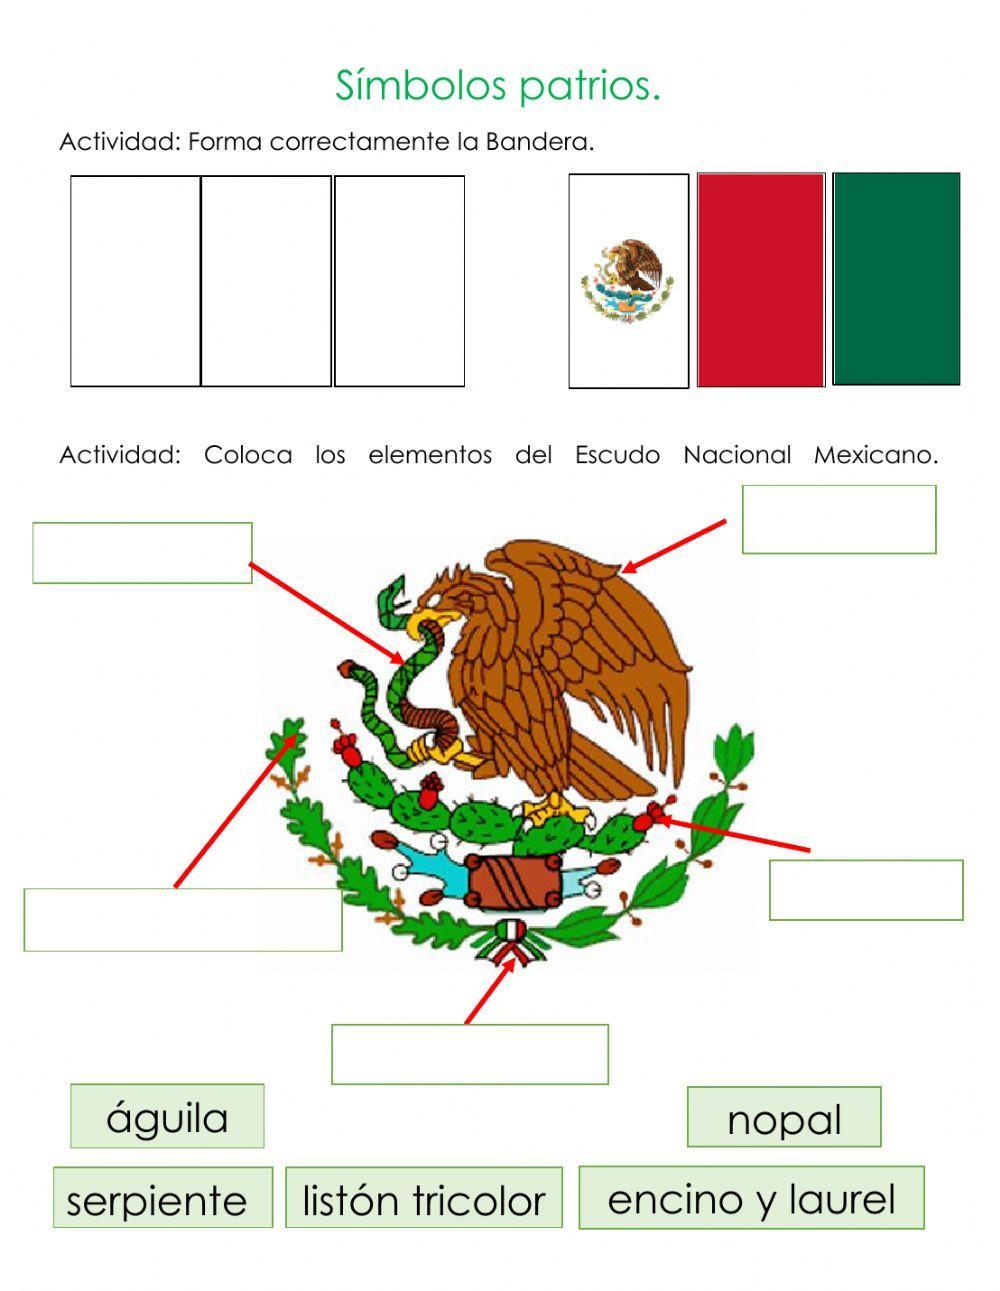 Símbolos patrios mexicanos